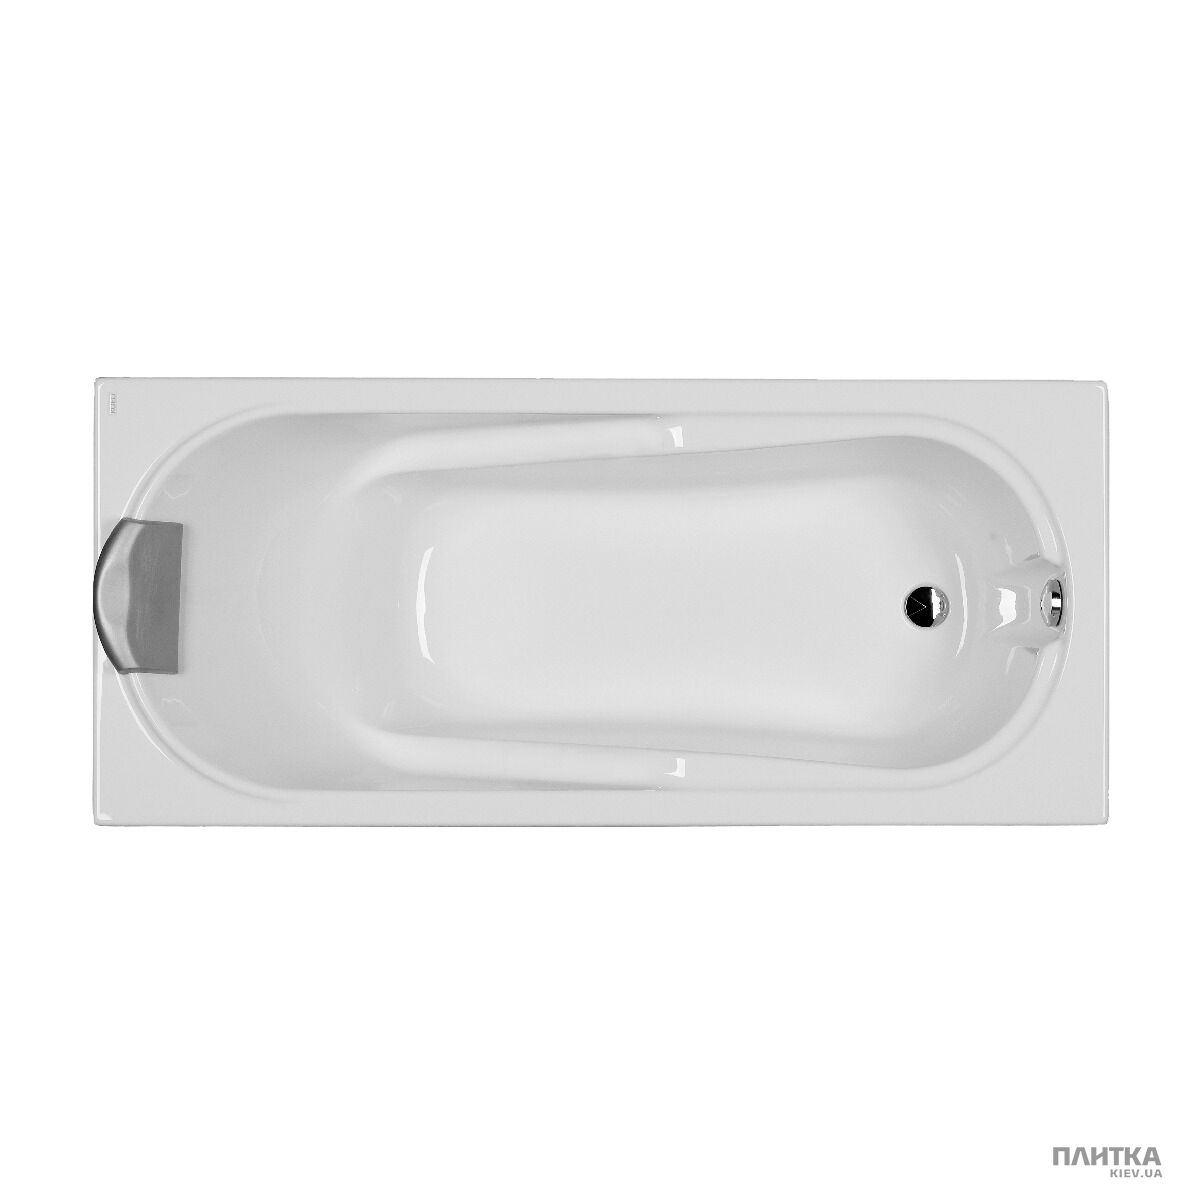 Акриловая ванна Kolo Comfort XWP306000G COMFORT 160 UA прямоугольная ванна 160 x 75 см в комплекте с сифоном Geberit 150.520.21.1. белый